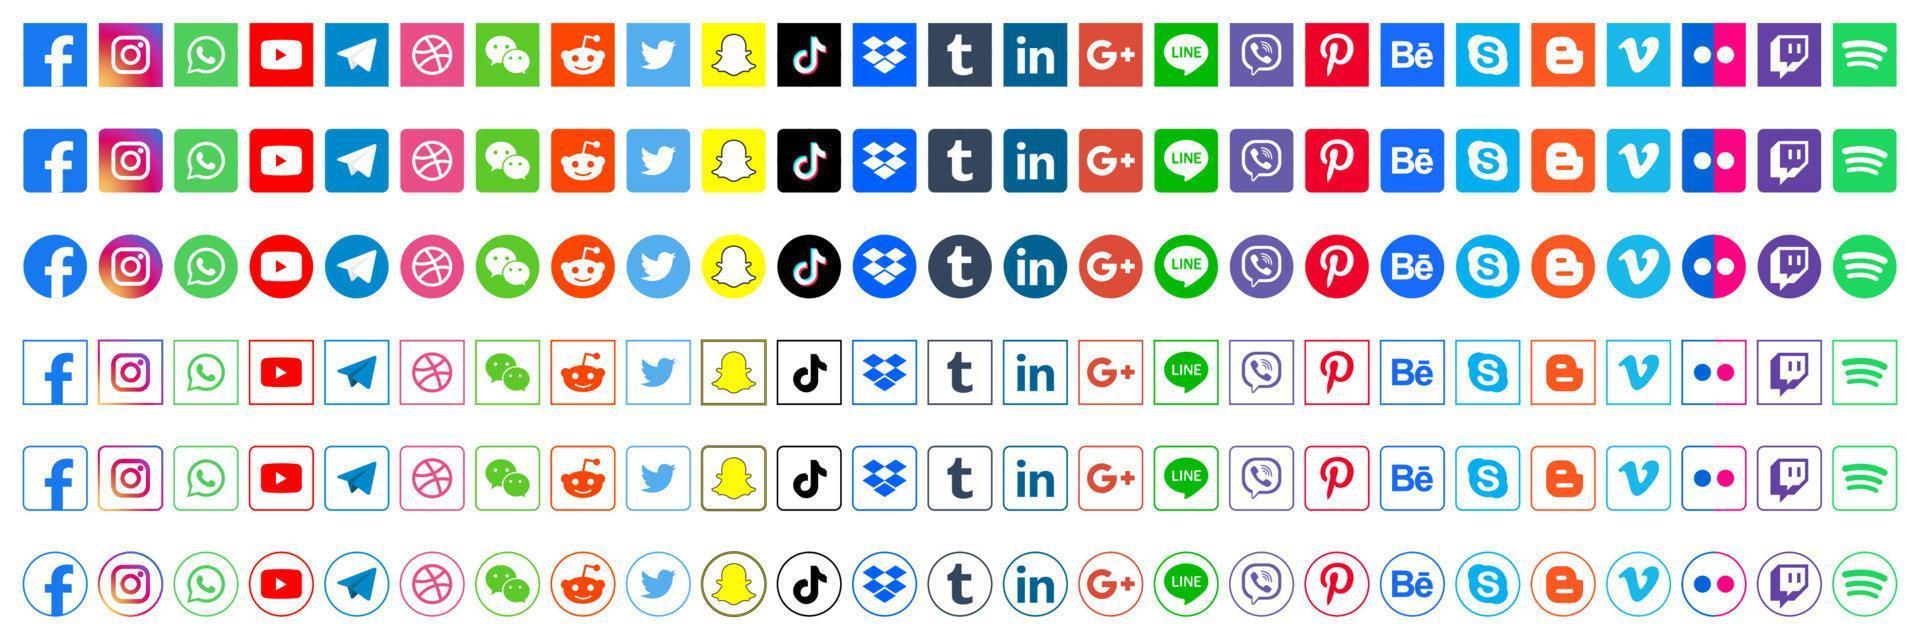 ställ in populära ikoner för sociala medier. facebook, instagram, twitter, youtube, pinterest, behance, google, linkedin, whatsap, snapchat och många fler. redaktionell vektorillustration vektor